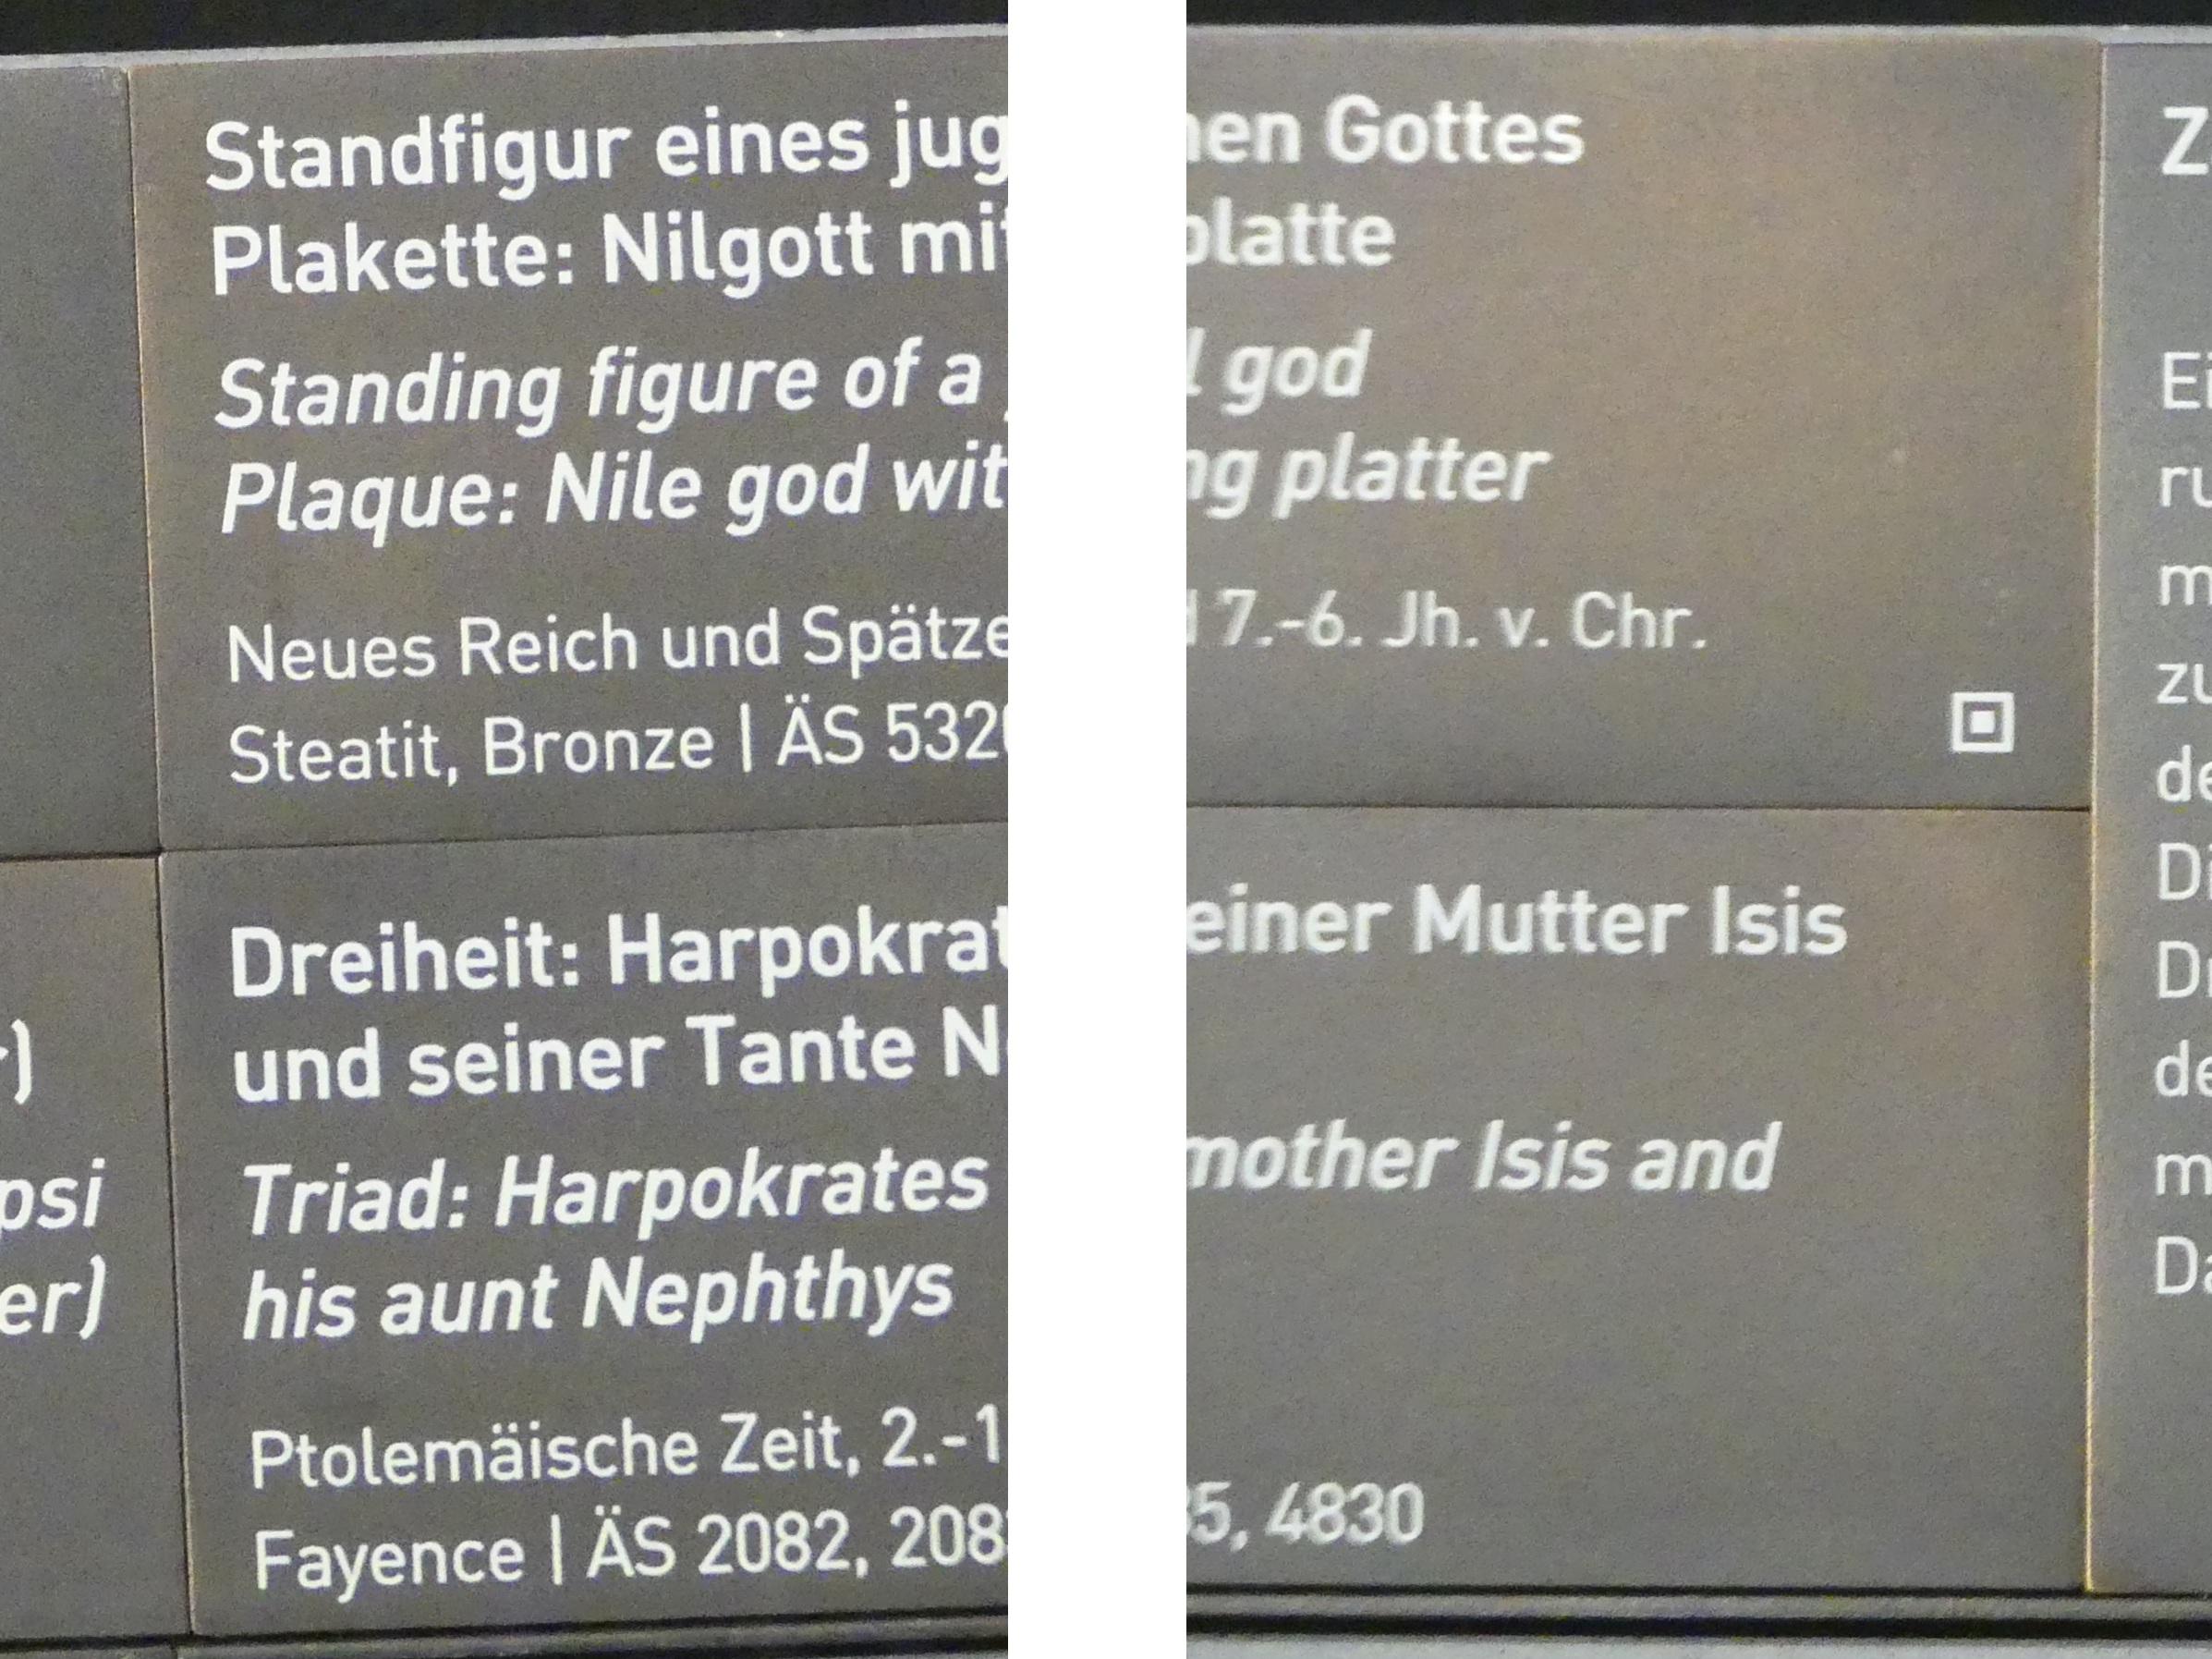 Standfigur eines jugendlichen Gottes, Neues Reich, 953 - 887 v. Chr., Bild 2/2